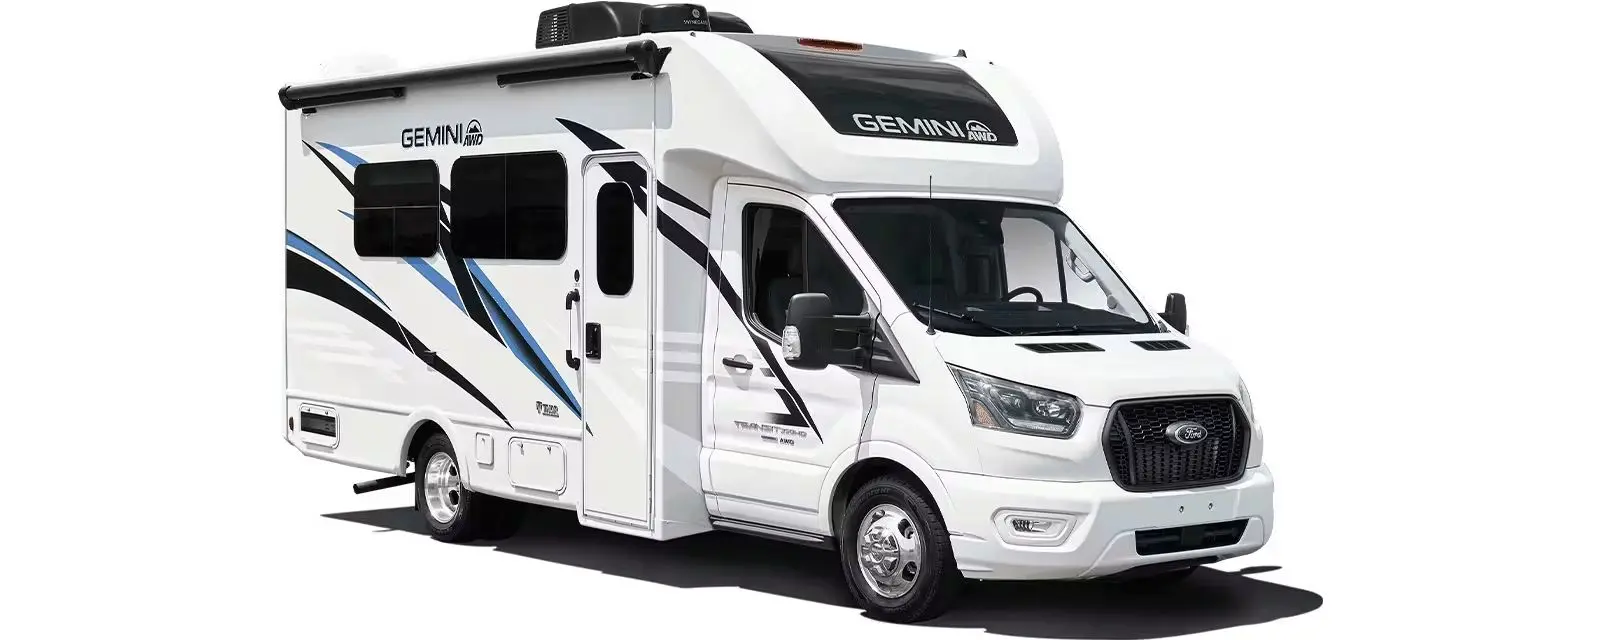 Gemini AWD Class B Camping Van